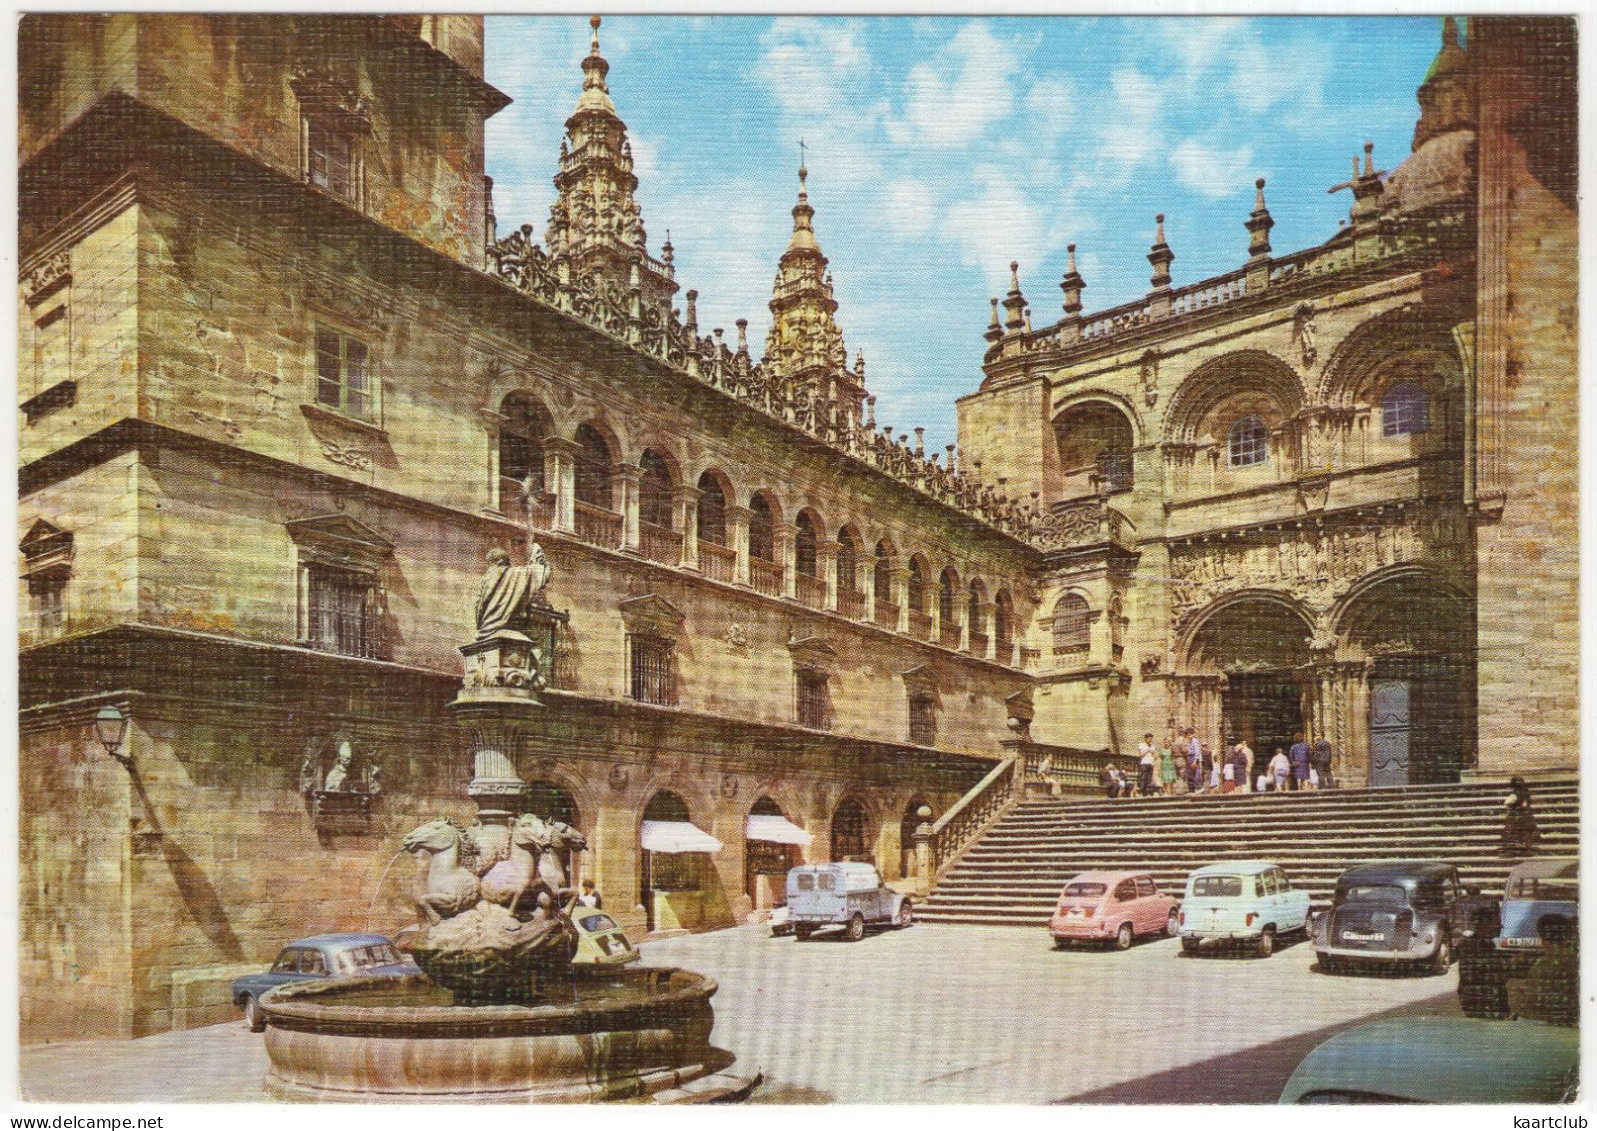 Santiago De Compostela: CITROËN TRACTION AVANT, 2CV & 2CV AZU, RENAULT 4, SEAT 600 - Platerias - (Spain) - Passenger Cars